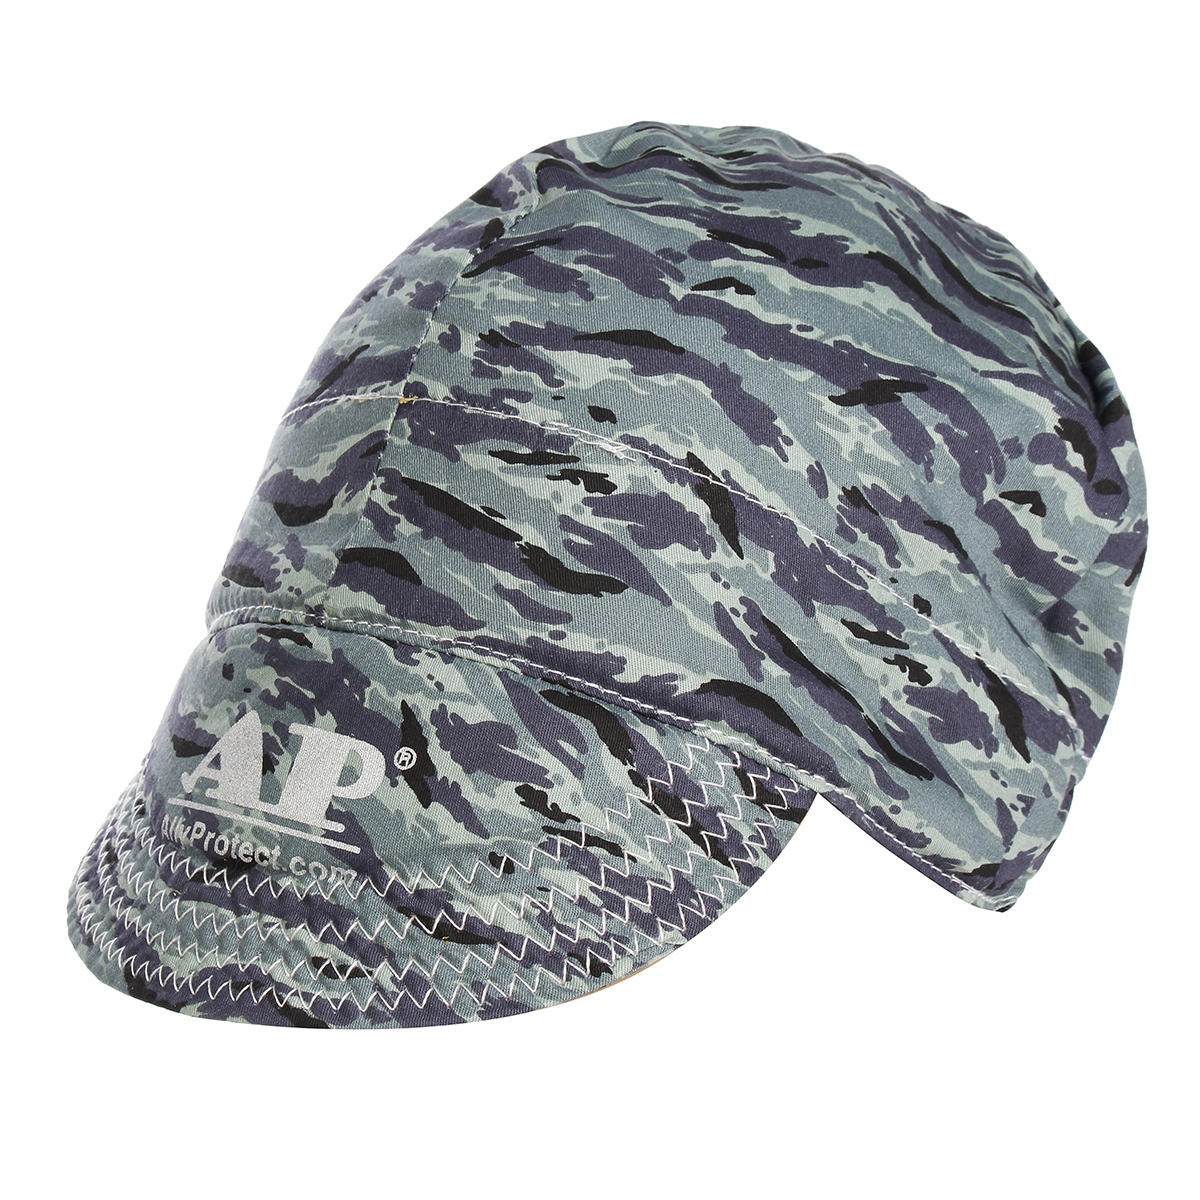 Verstelbare lassen beschermende hoed Cap sjaal lassers Vlamvertragende katoenen veiligheidshelm